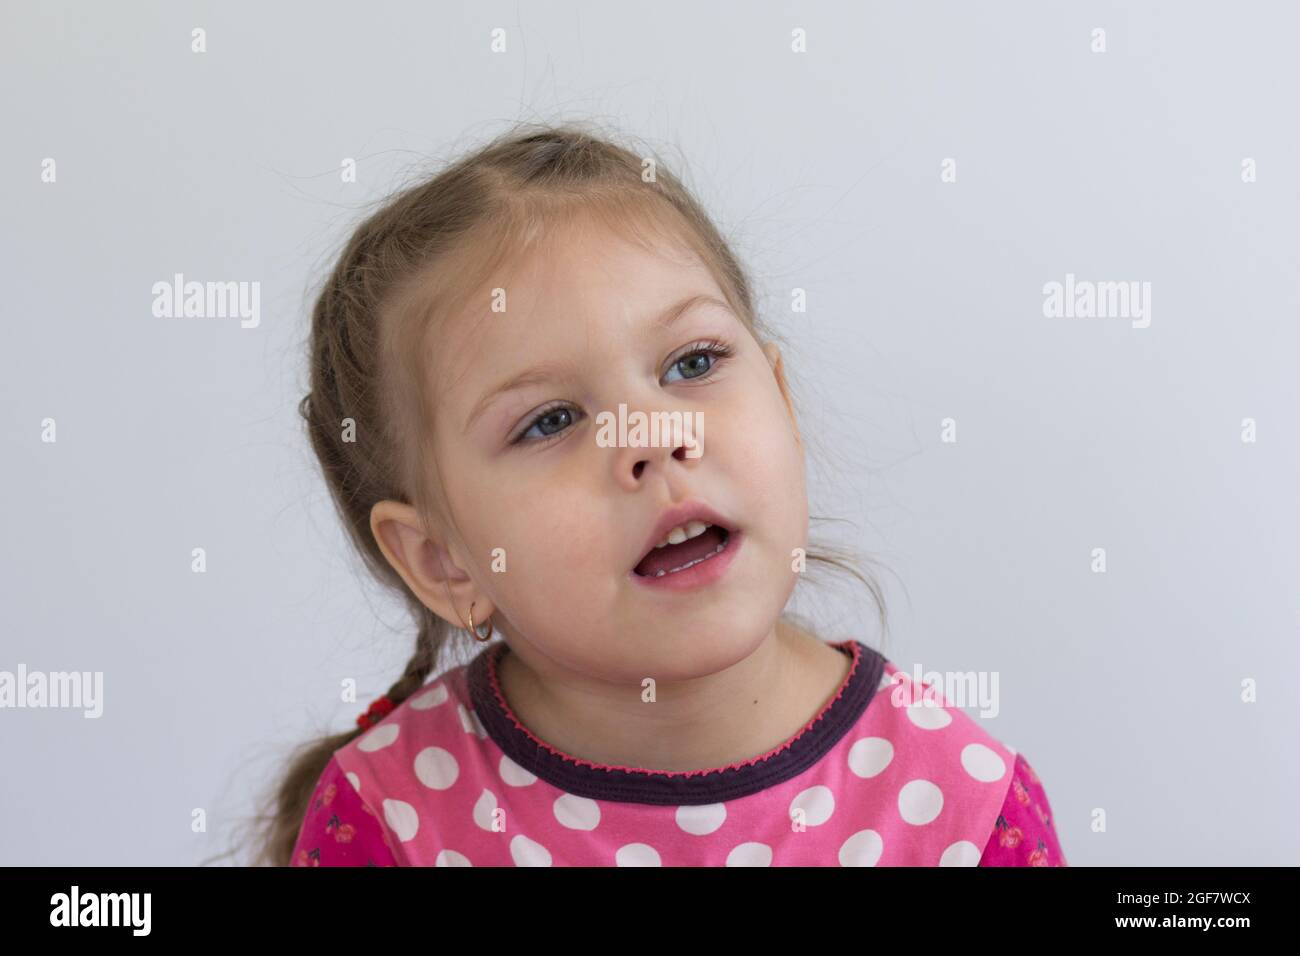 Retrato de un niño caucásico de tres años mirando a un lado con una mirada atenta sobre fondo blanco Foto de stock